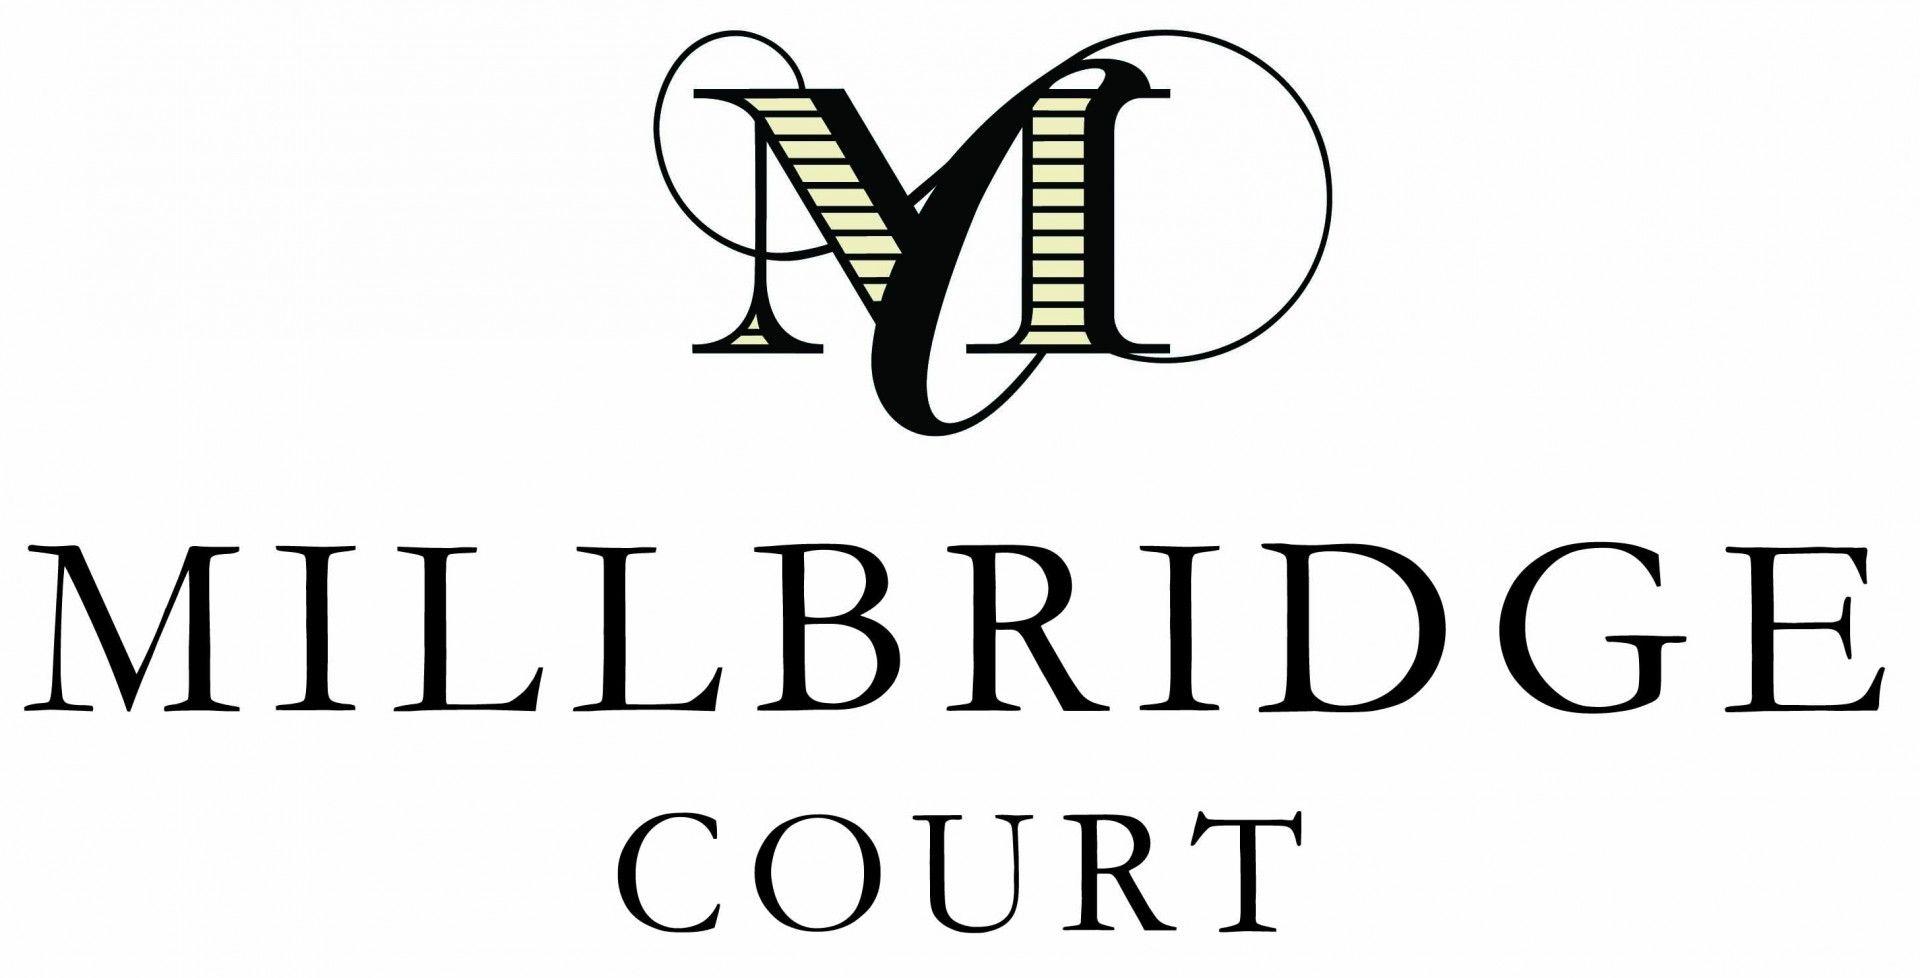 Court Logo - Millbridge Court Logo smaller